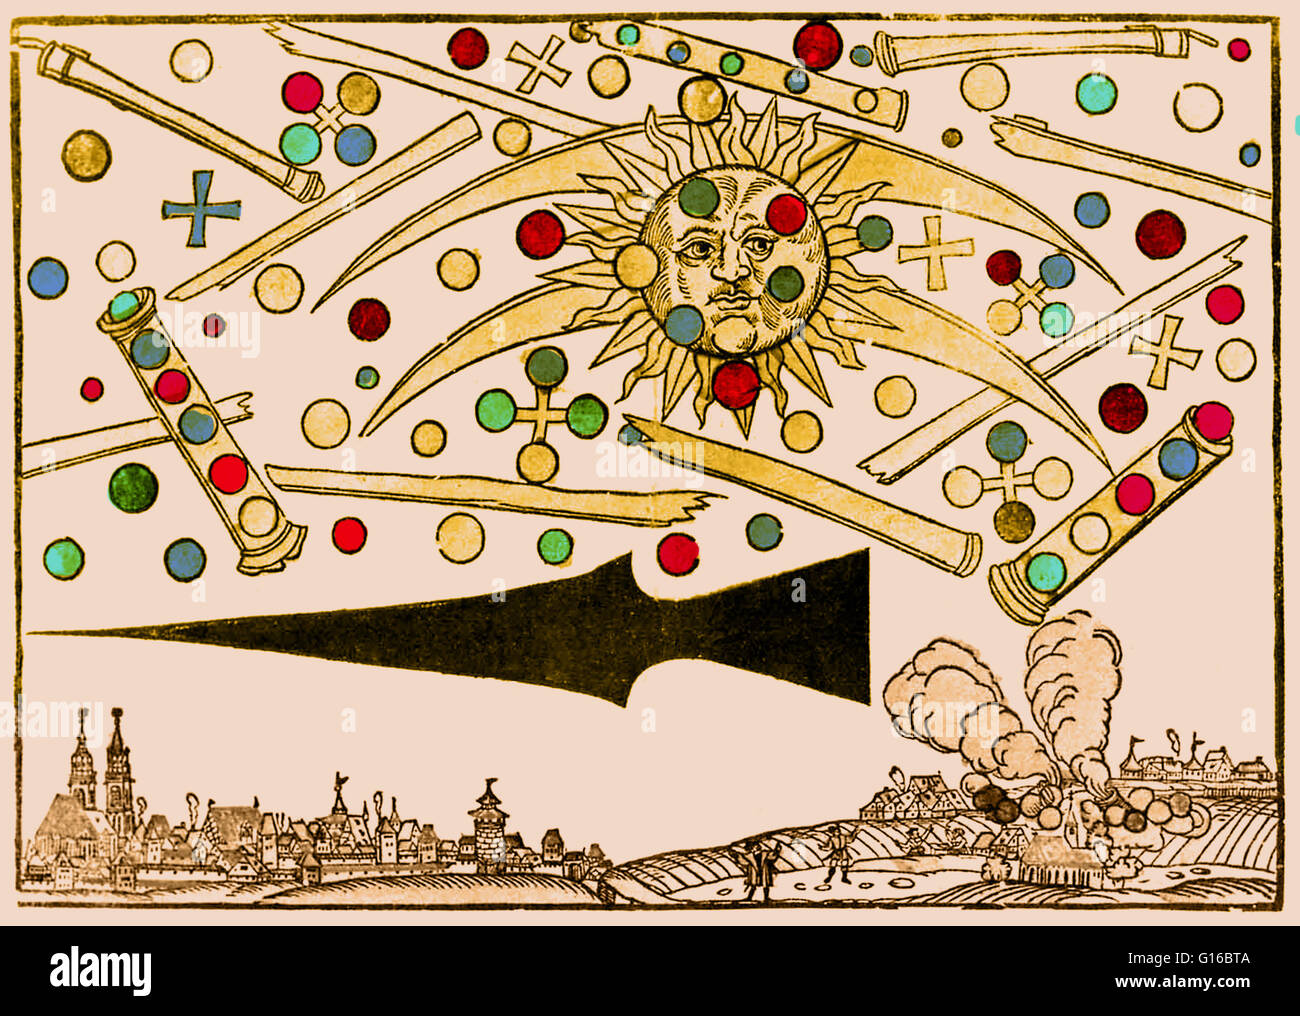 D'un enhancment couleur 16e siècle gravure sur bois appelée Nuremberg UFO par Hans Glaser. Au lever du soleil sur le 14 avril 1561, les citoyens de Nuremberg vu 'Un spectacle effroyable.' Le ciel semblait remplir d'objets cylindriques à partir de laquelle le rouge, noir, orang Banque D'Images